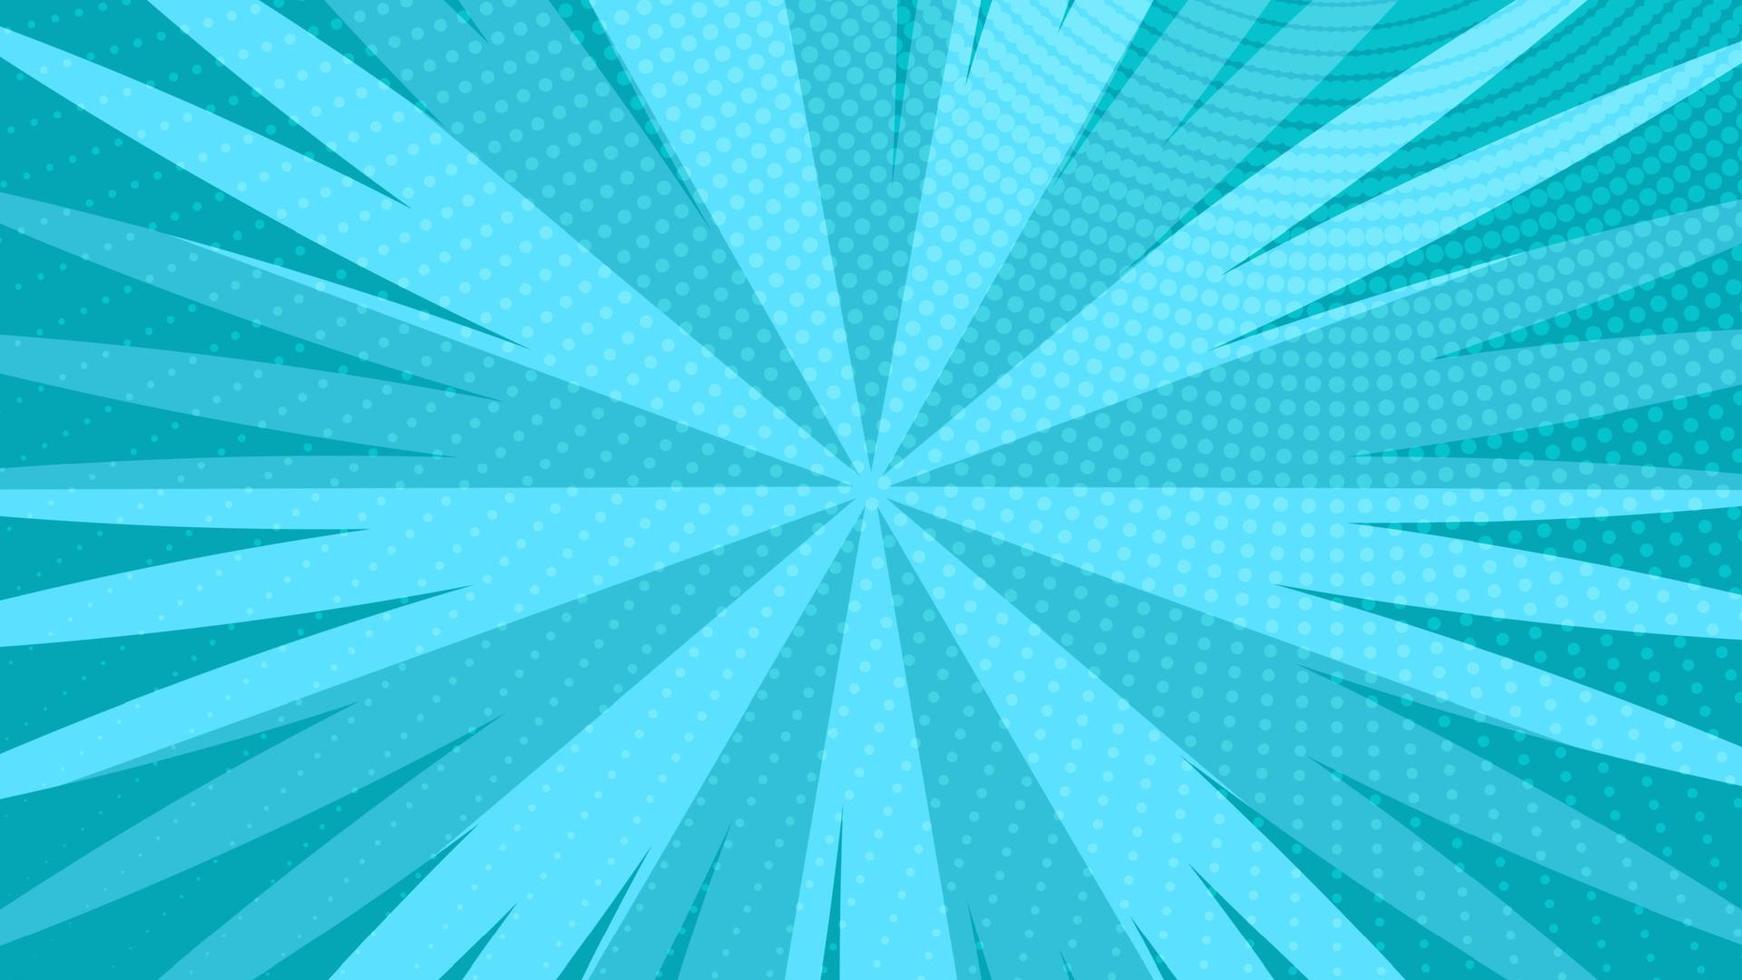 fondo de página de cómic azul en estilo pop art con espacio vacío. plantilla con rayos, puntos y textura de efecto de trama de semitonos. ilustración vectorial vector